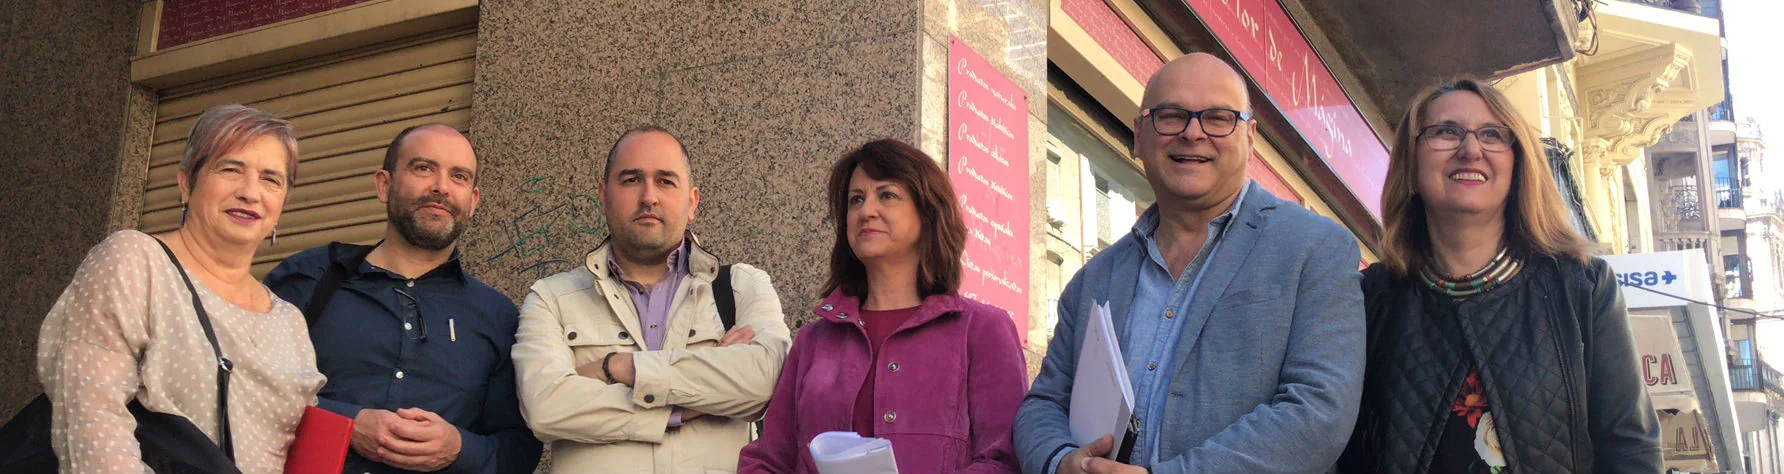 Dirigentes socialistas ante la placa del callejón María de Molina